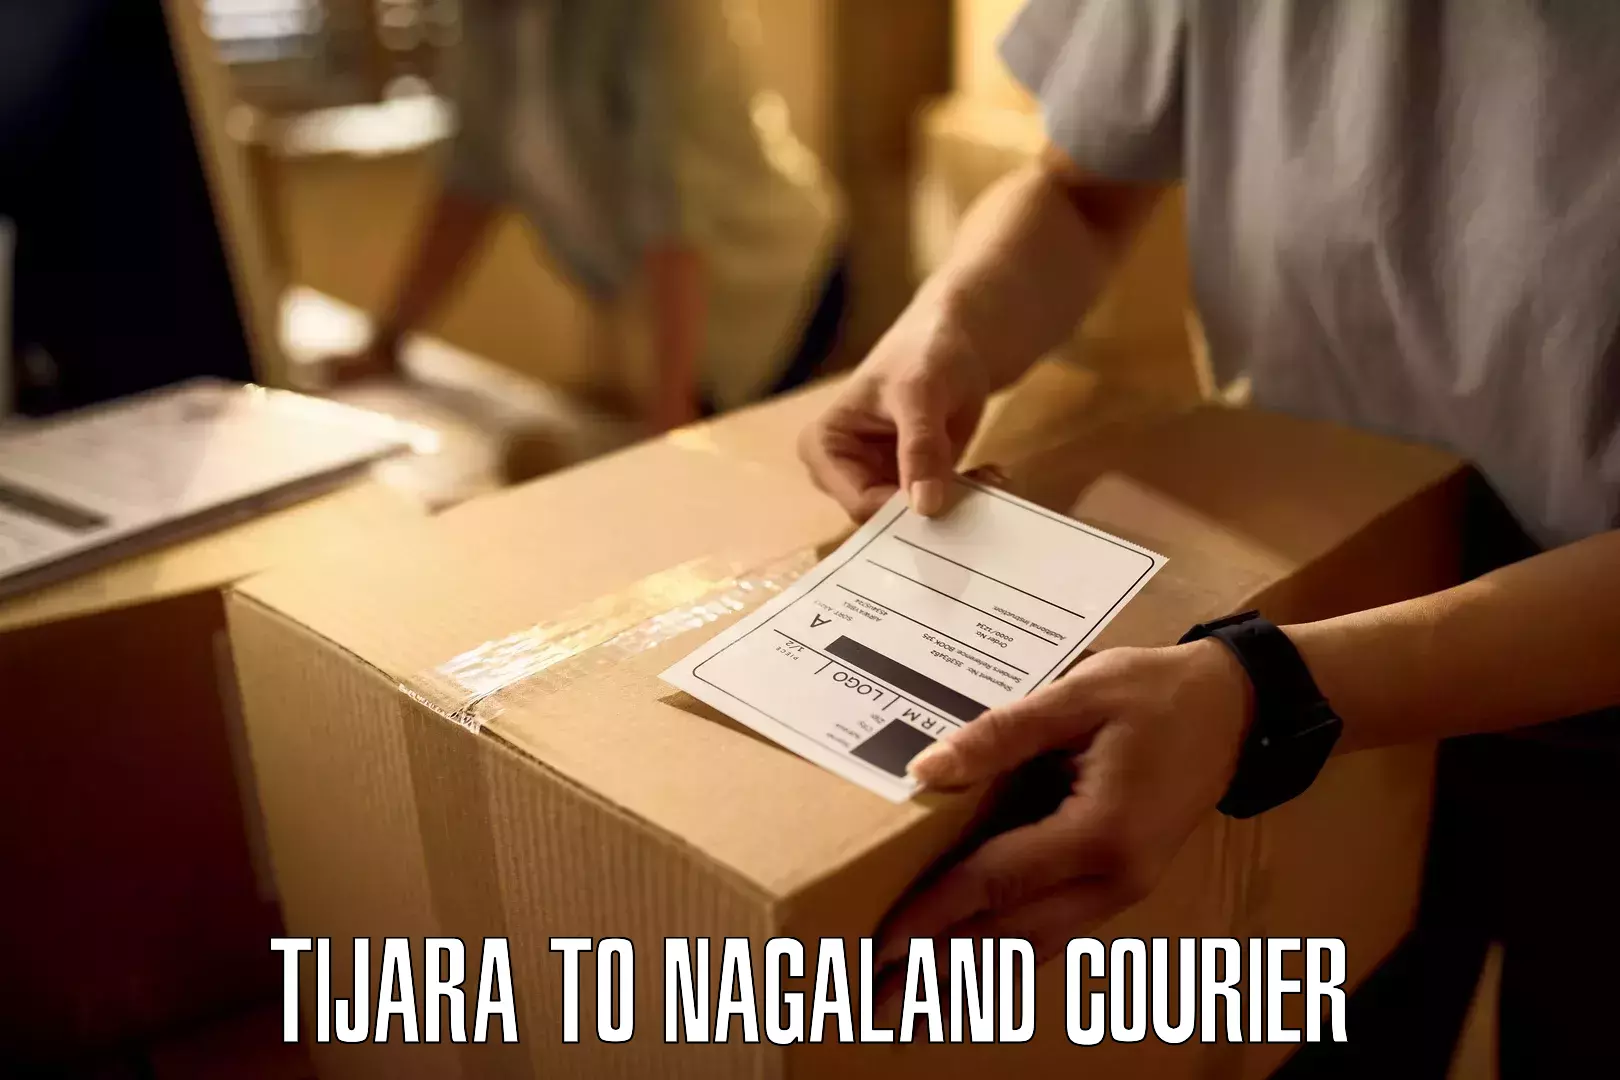 Advanced shipping services Tijara to Nagaland